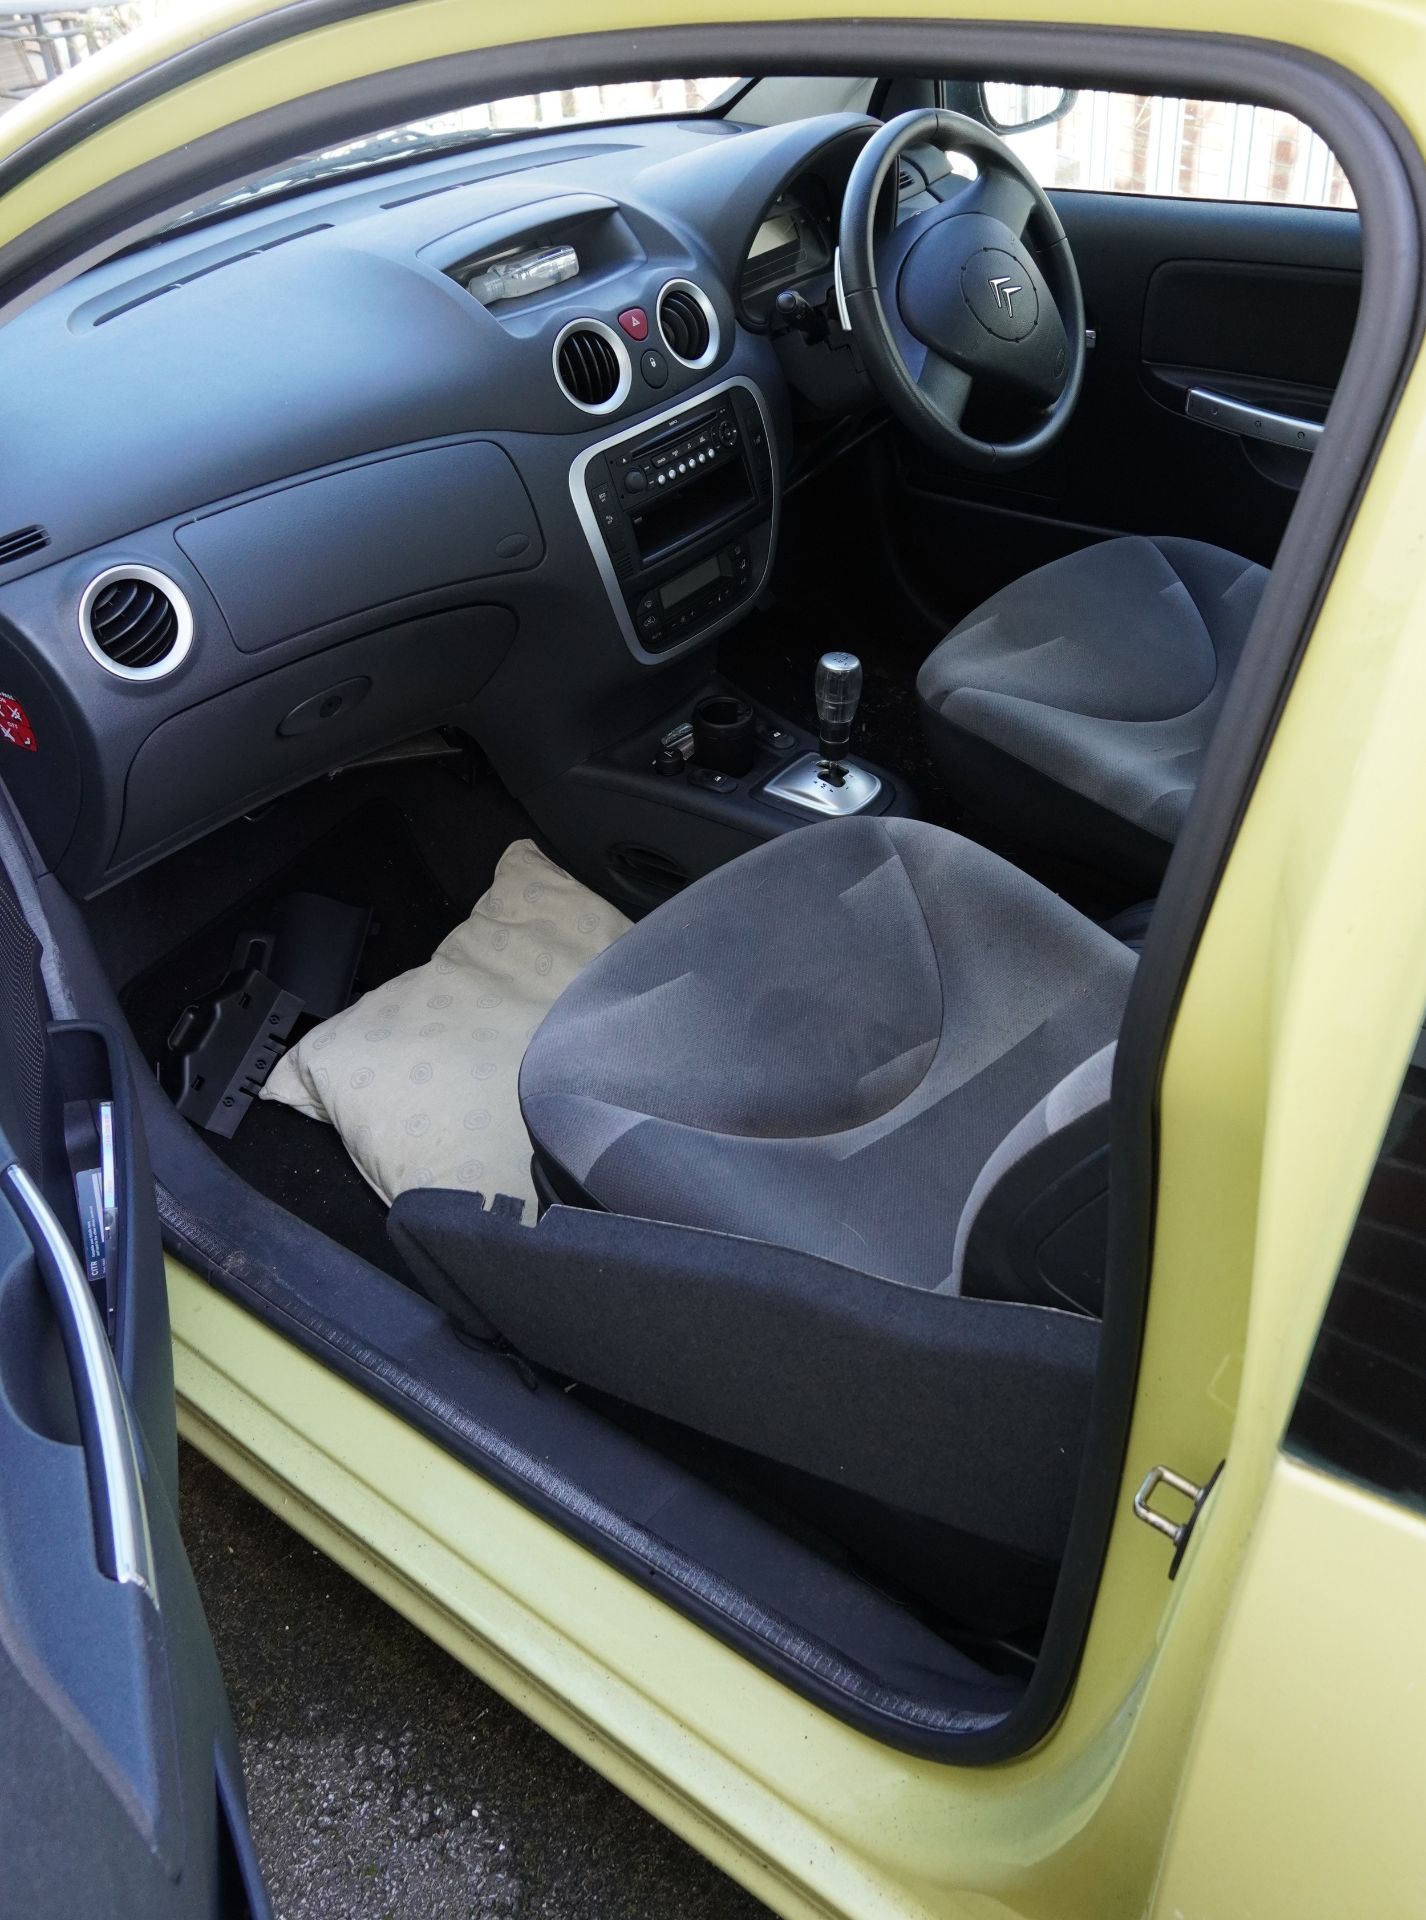 2007 manual Citroen C2, 1.4 petrol three door hatchback, Reg GL07 JFG, No key, No V5, No MOT, This - Bild 8 aus 12